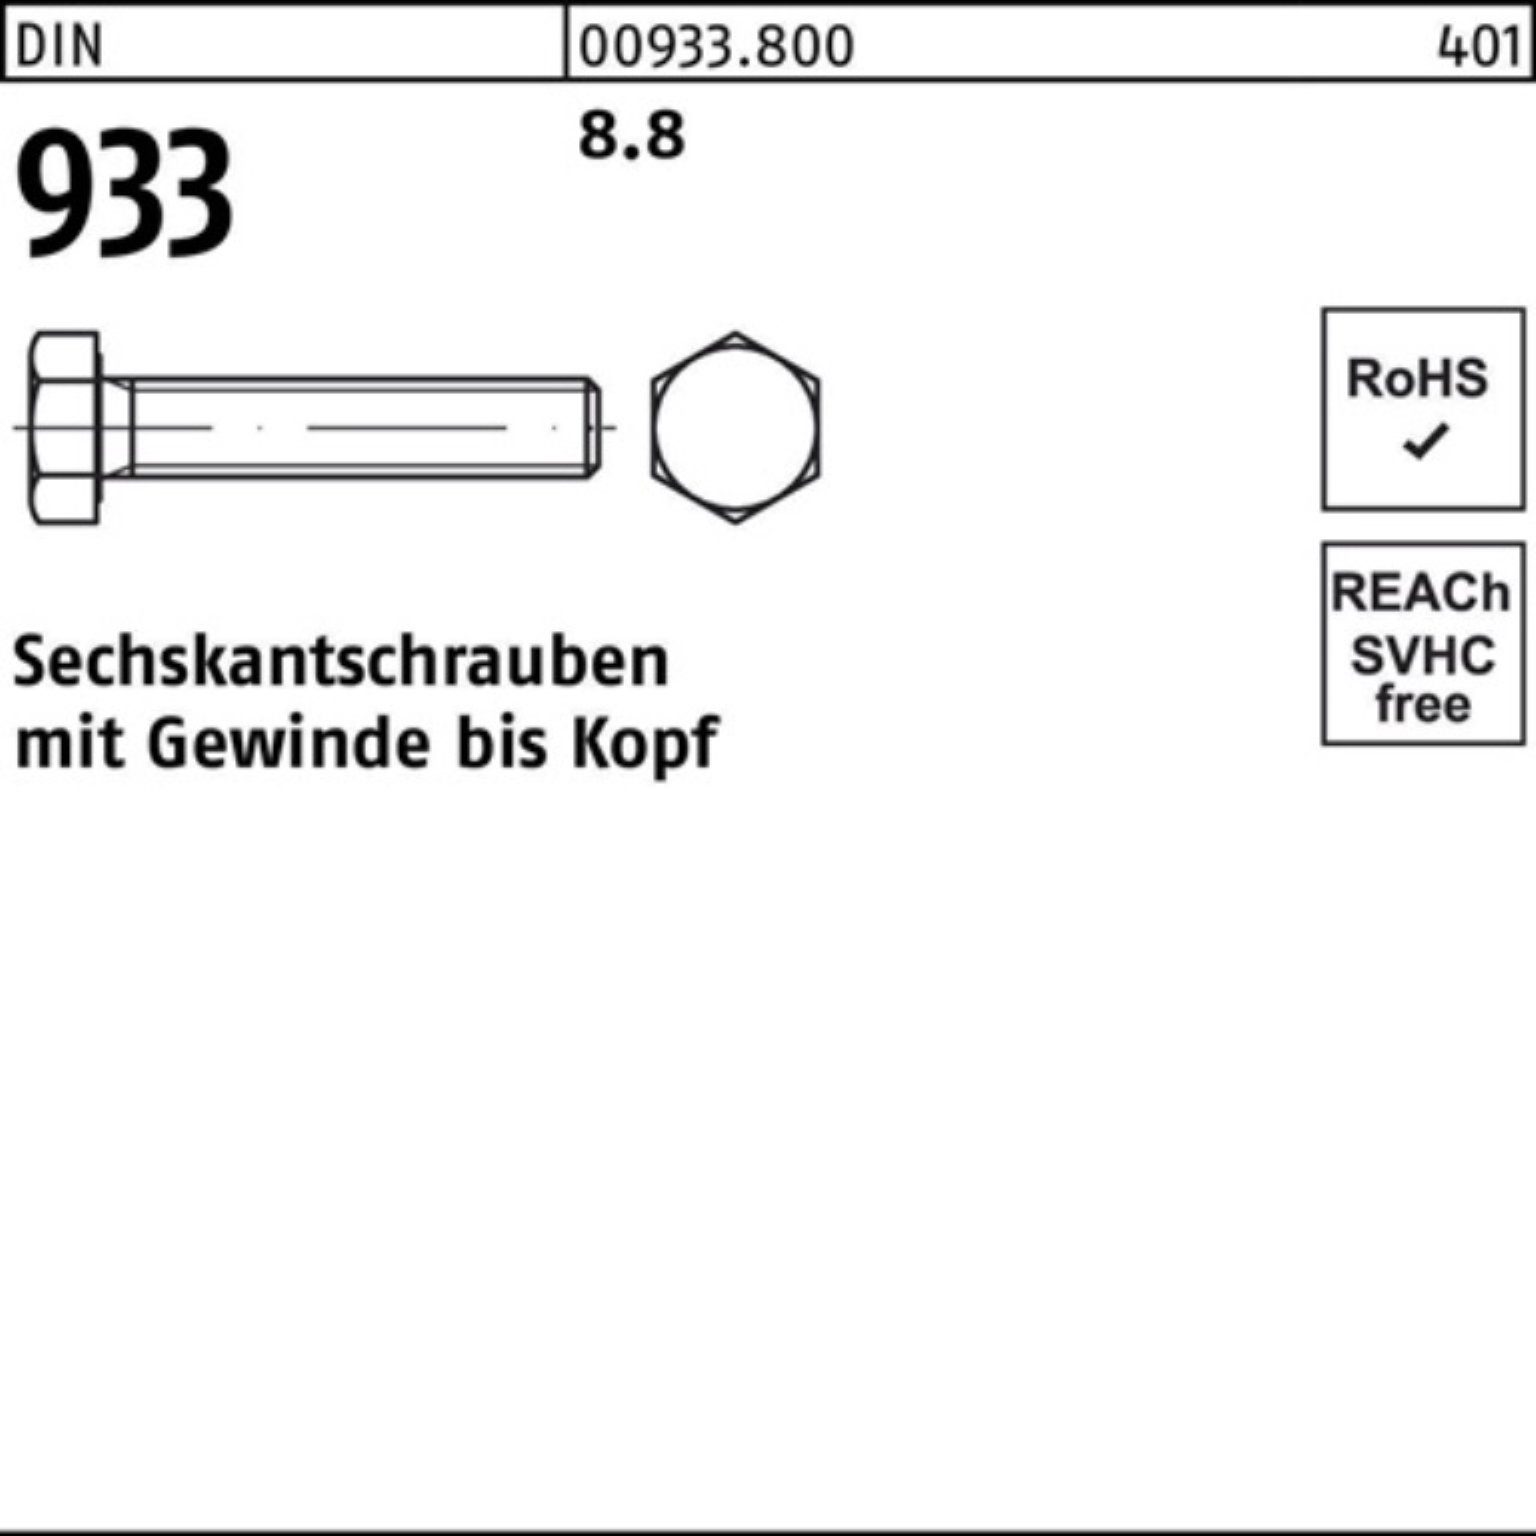 Reyher Sechskantschraube 100er Pack Sechskantschraube 1 8.8 933 M42x Stück VG DIN 933 220 DIN